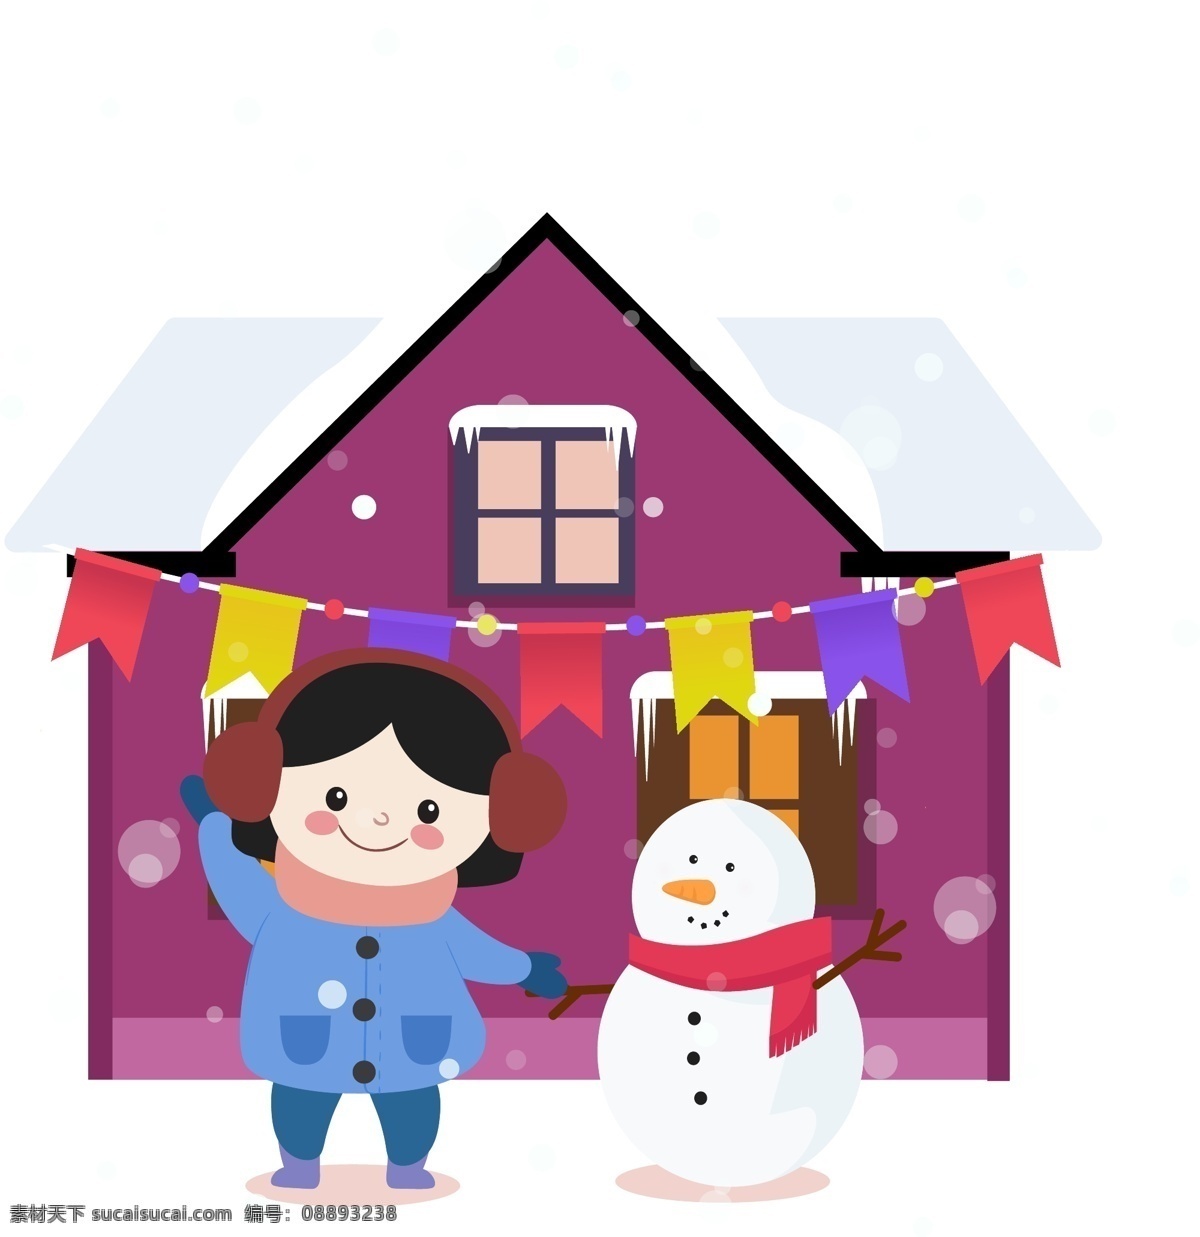 简约 风格 女孩 雪人 冬季 元素 生活 人物 节日 房屋 日常 休闲 下雪 气氛